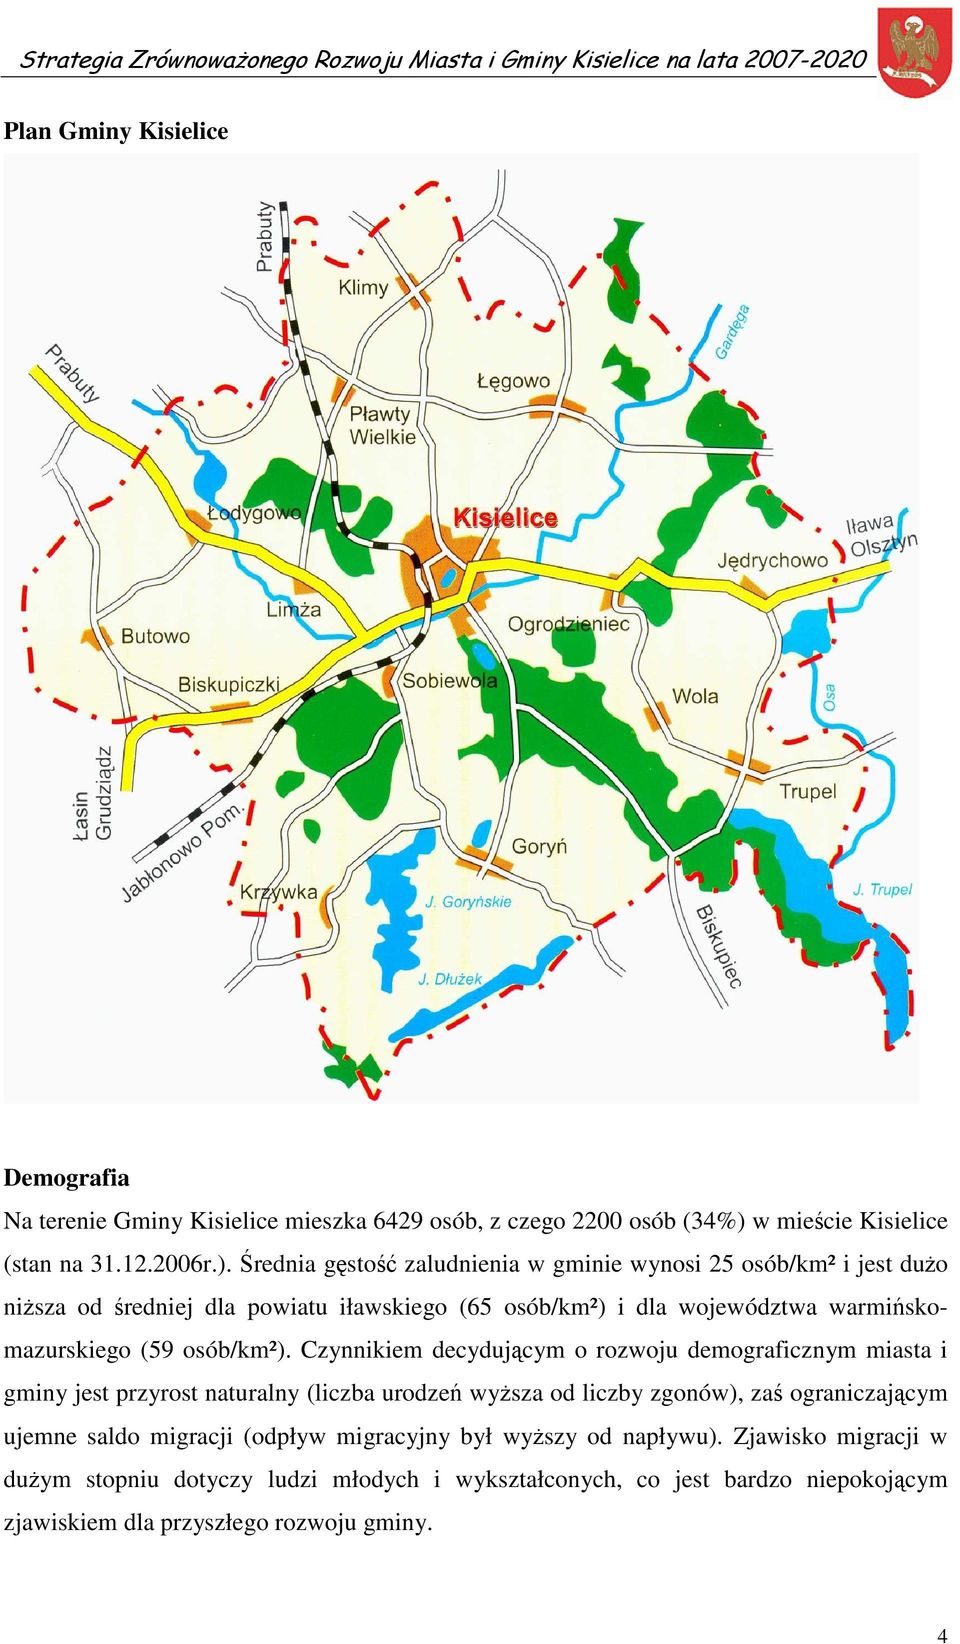 Średnia gęstość zaludnienia w gminie wynosi 25 osób/km² i jest dużo niższa od średniej dla powiatu iławskiego (65 osób/km²) i dla województwa warmińskomazurskiego (59